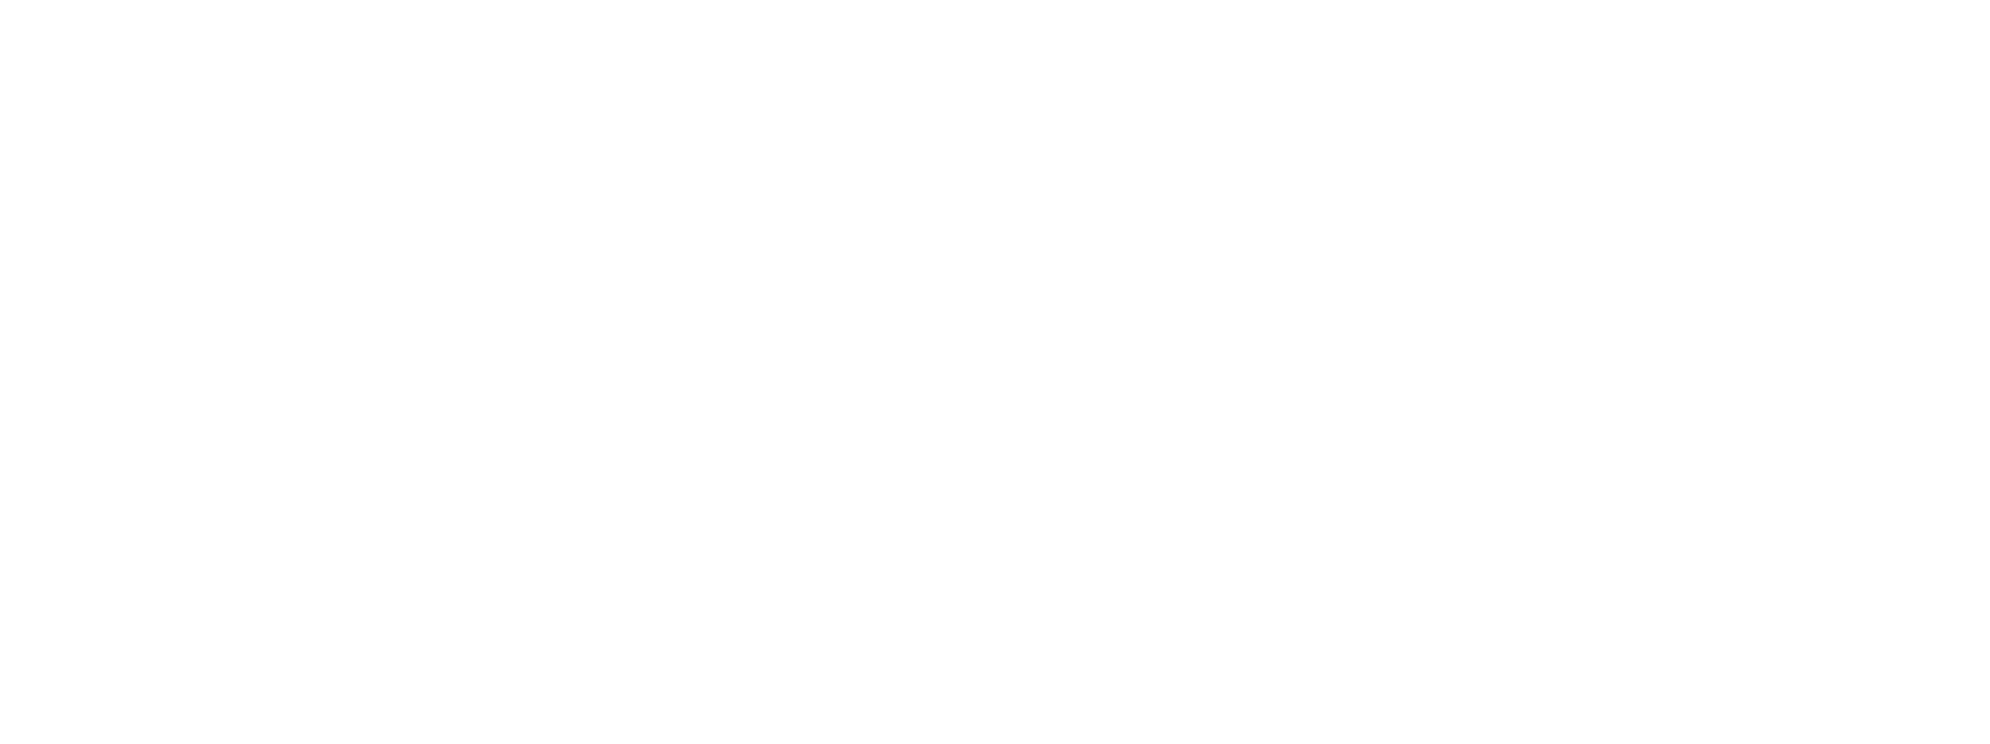 botón de grupo vulnerable, personas con diabetes